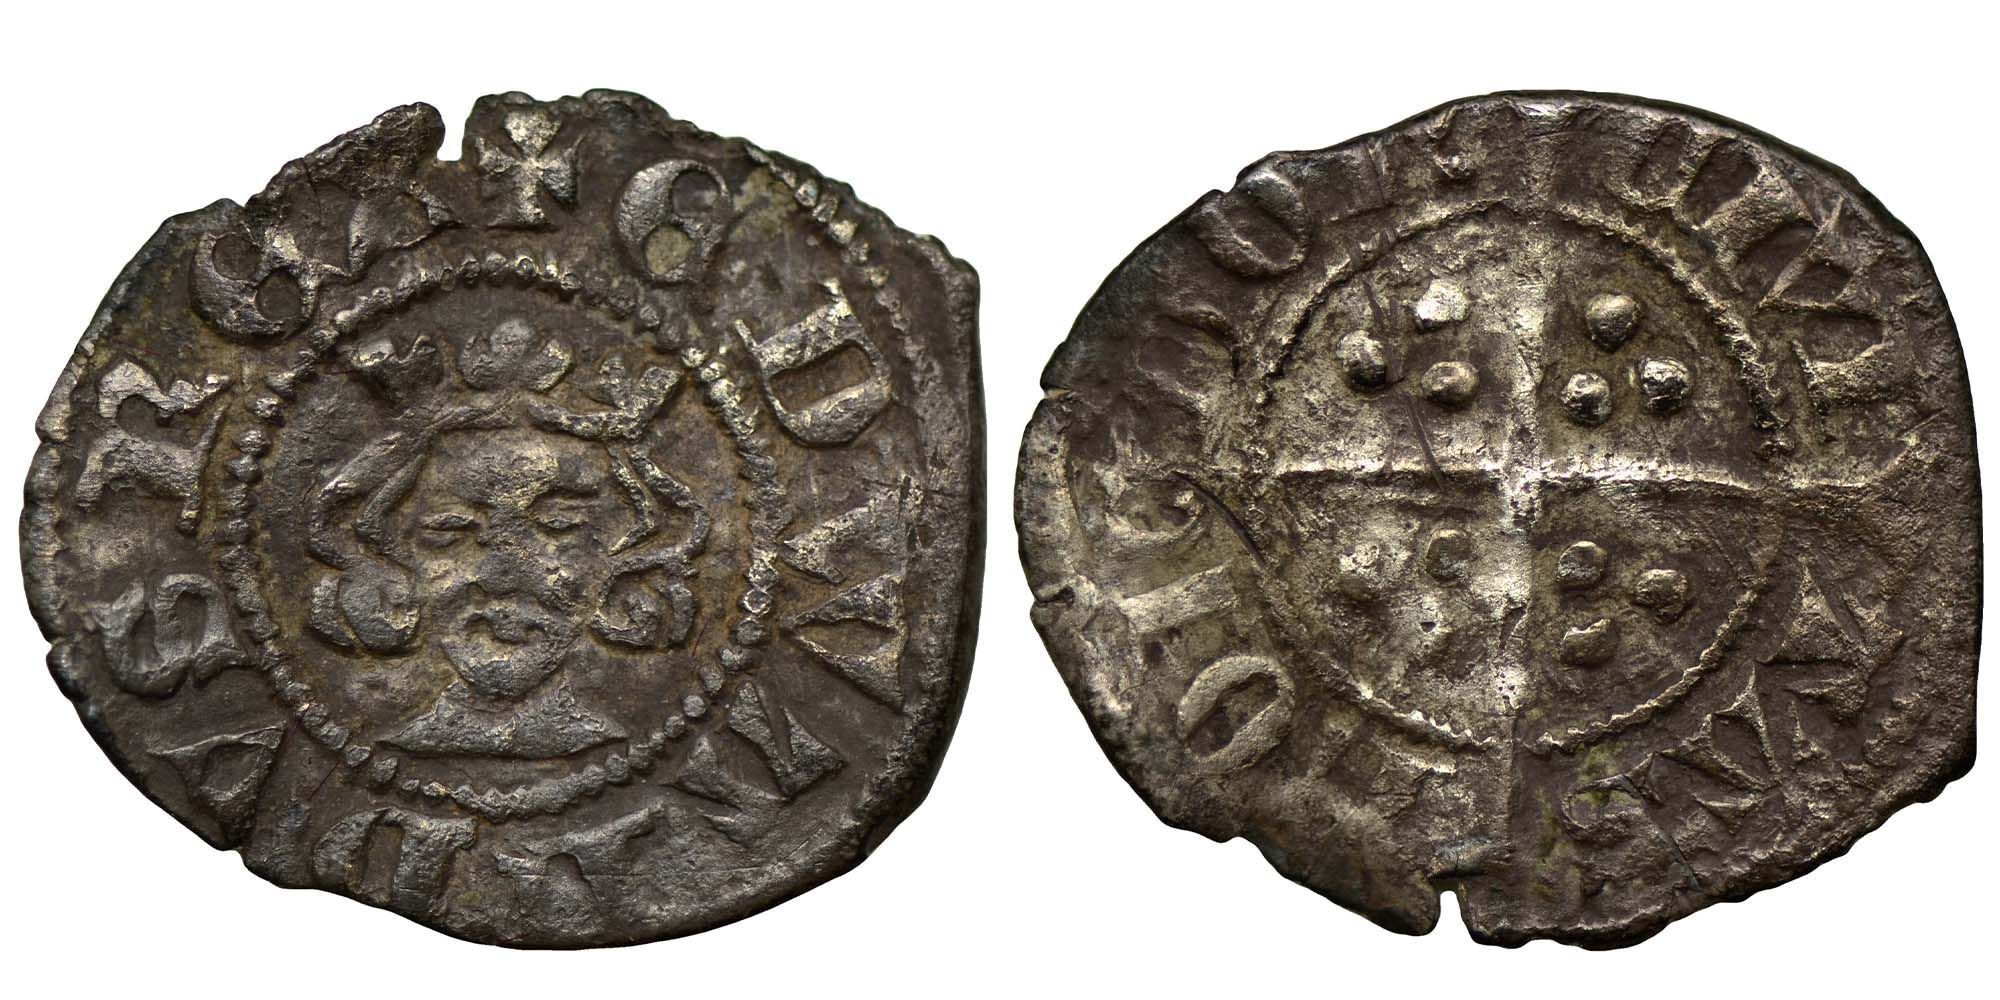 Edward I Silver Farthing 1279-1307